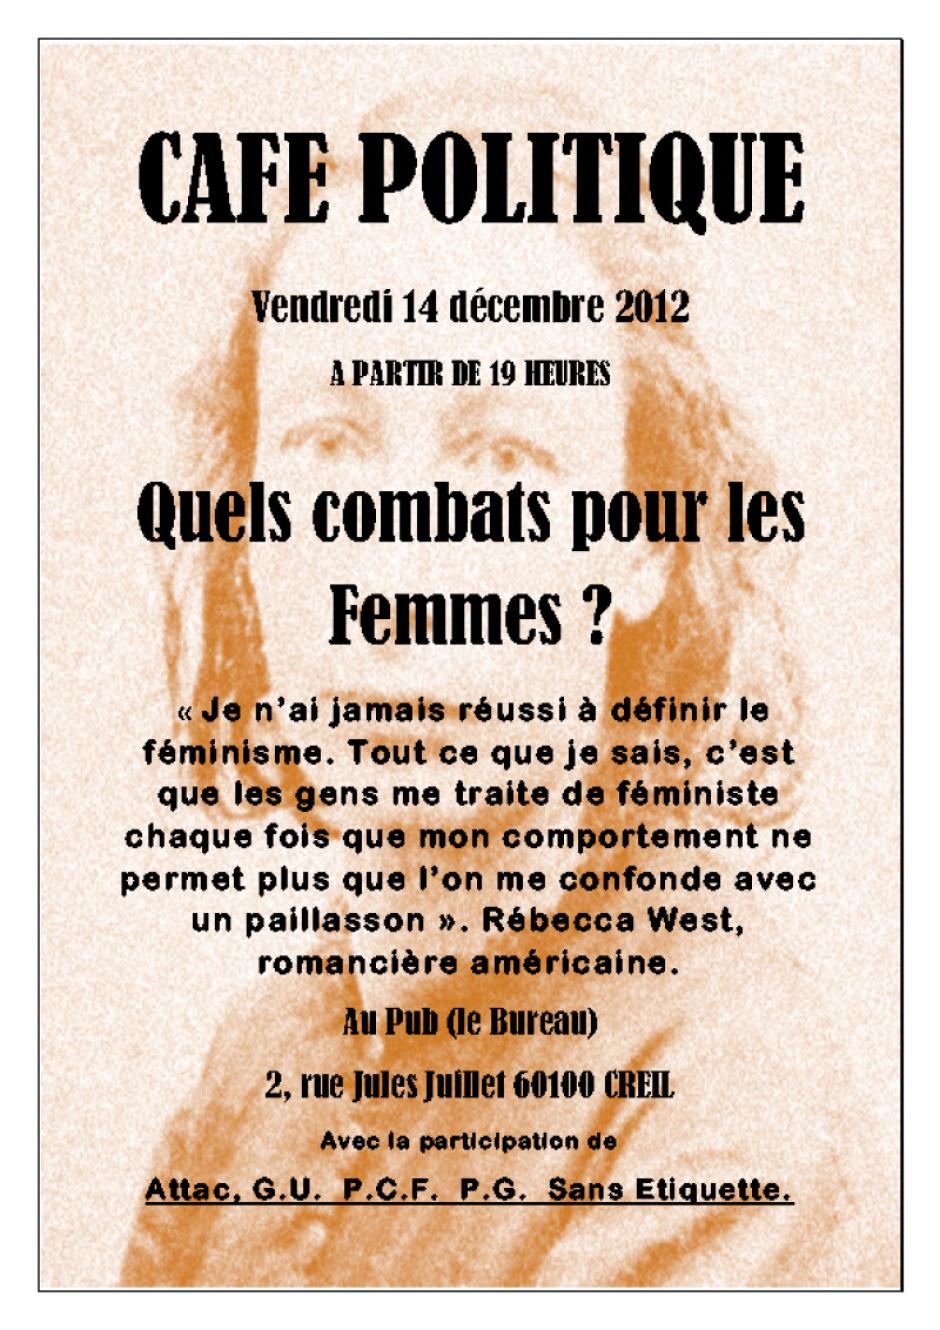 14 décembre, Creil - Café politique « Quels combats pour les femmes ? »